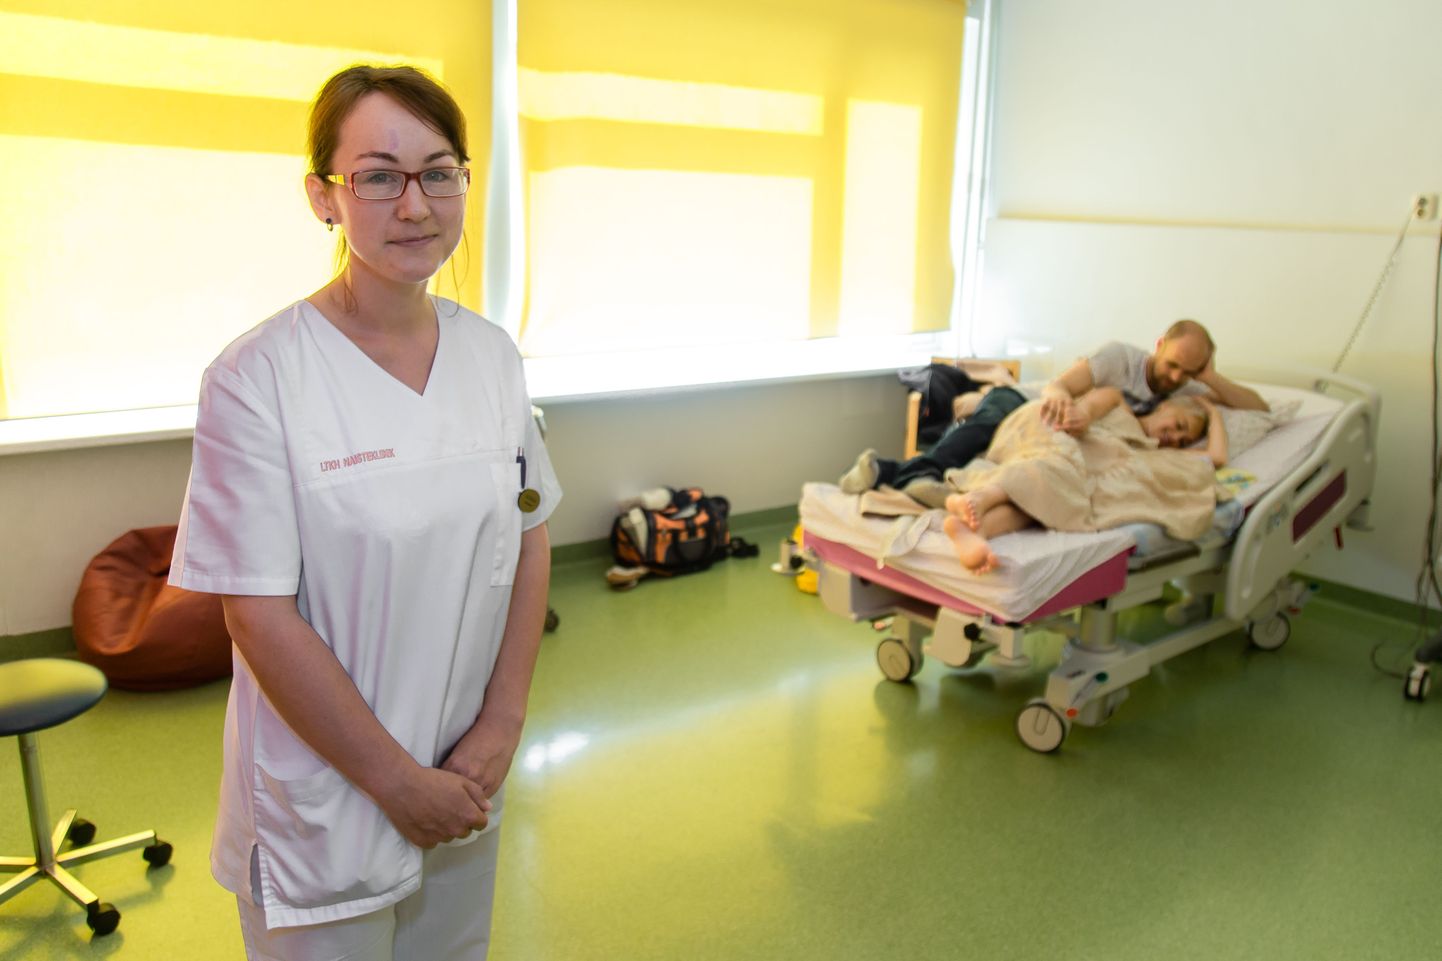 Käthlin Vahtel on töötanud ämmaemandana nii Tartus kui Tallinnas, kokku juba viis aastat. Sel pildil seisab ta Pelgulinna sünnitusmaja peretoas. Ta nendib, et lõviosa nende haigla sünnitustest on peresünnitused.